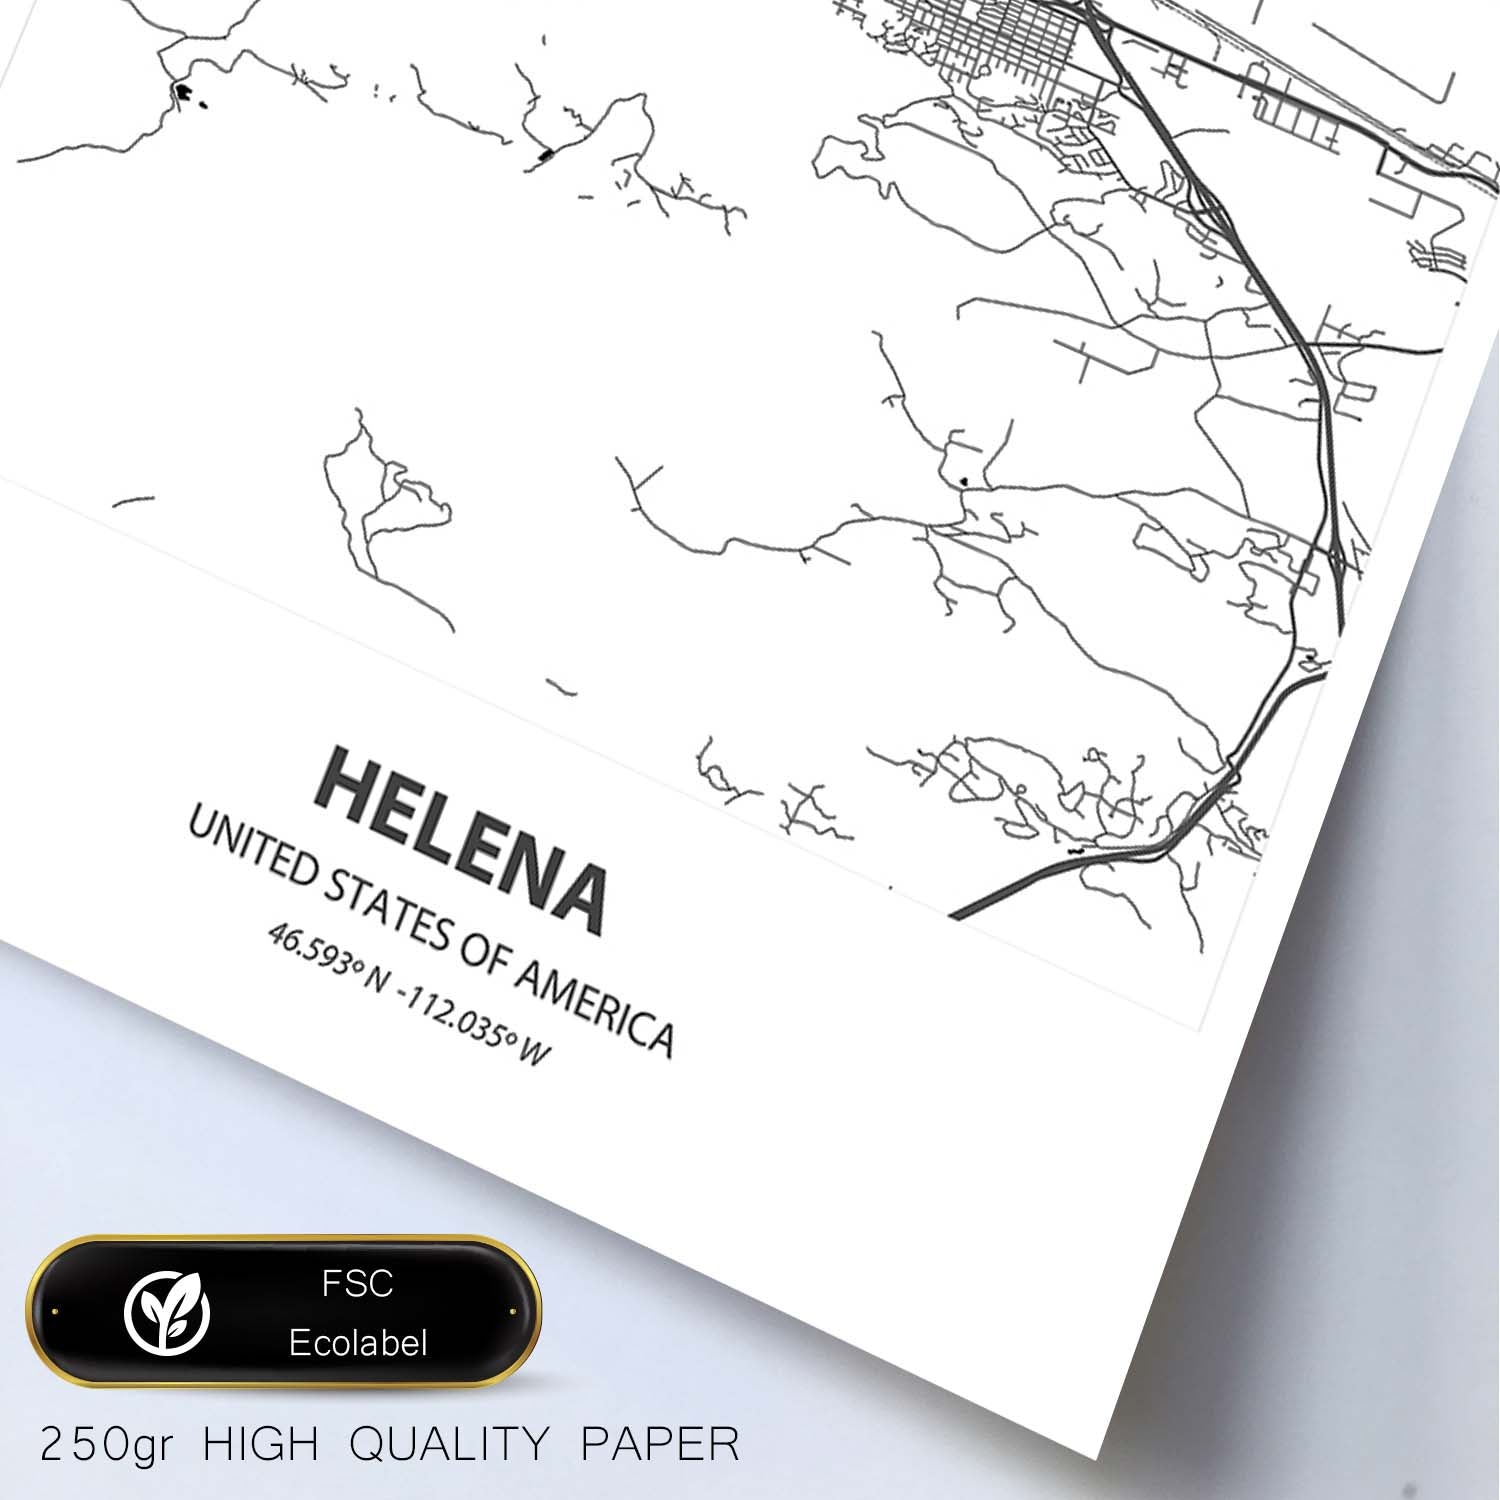 Poster con mapa de Helena - USA. Láminas de ciudades de Estados Unidos con mares y ríos en color negro.-Artwork-Nacnic-Nacnic Estudio SL